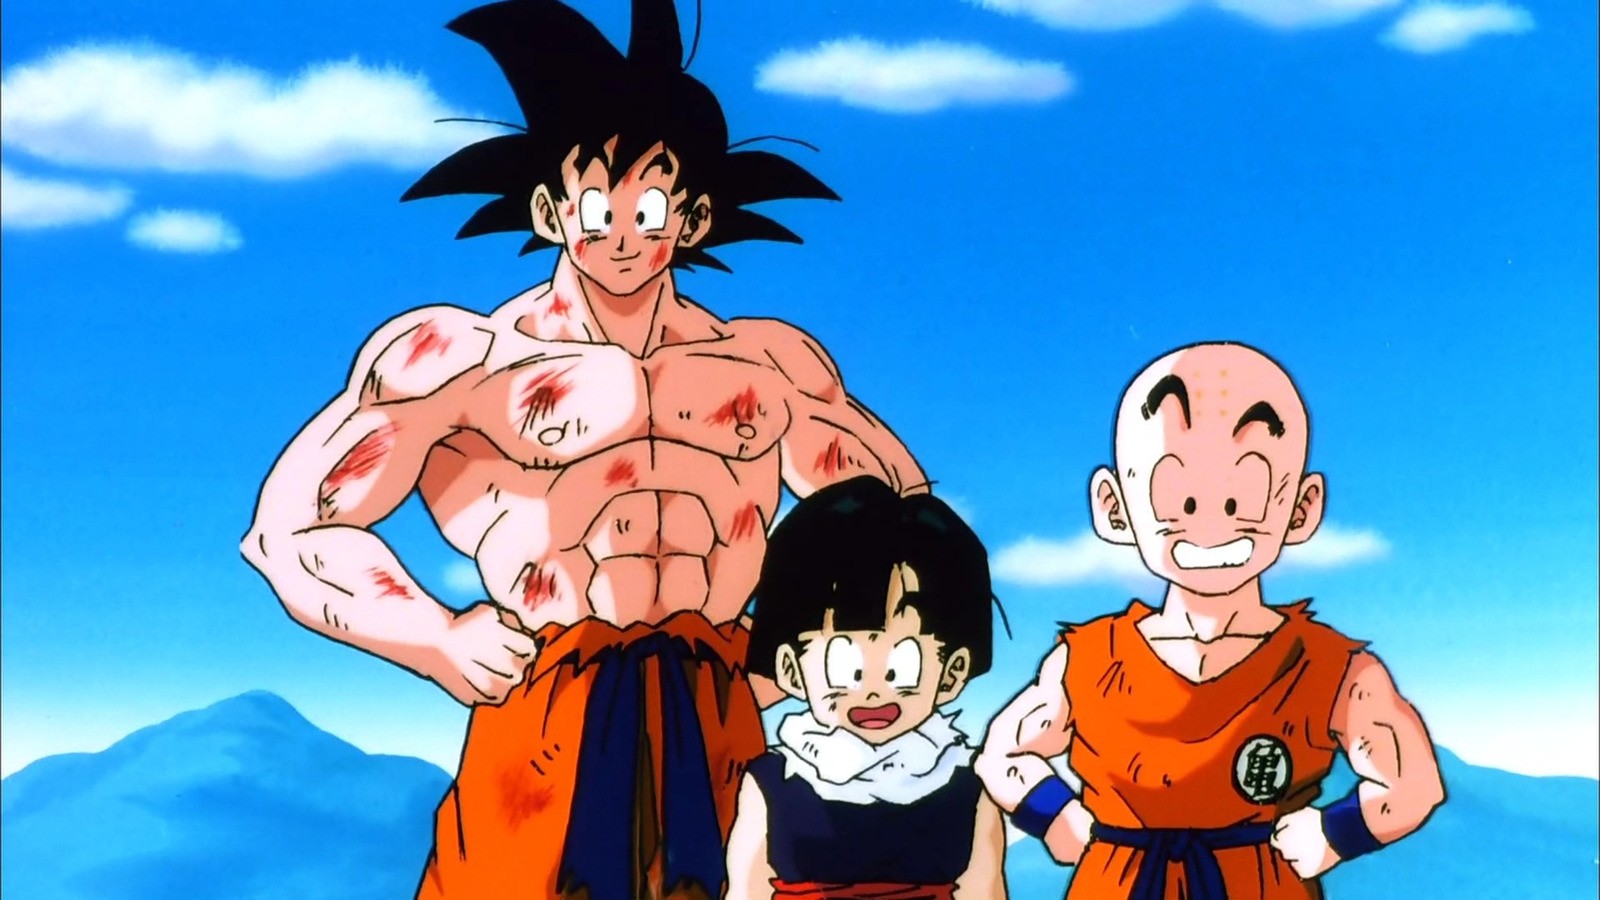 Goku in Dragon Ball Z - Akira Toriyama